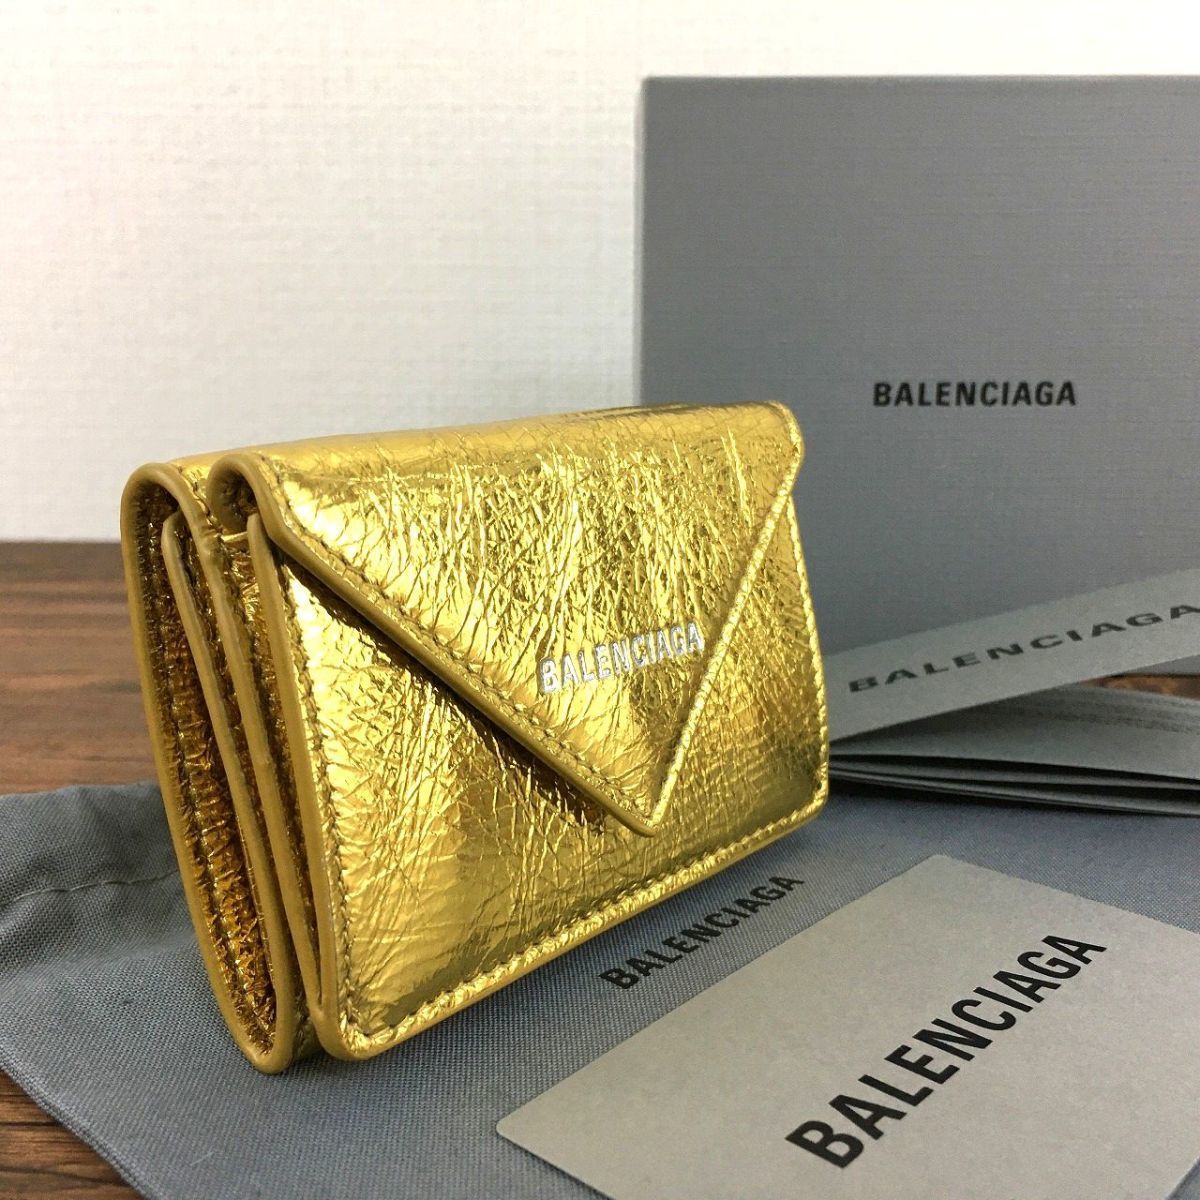 バレンシアガ ペーパーミニウォレット 財布 財布 ファッション小物 レディース 新規購入